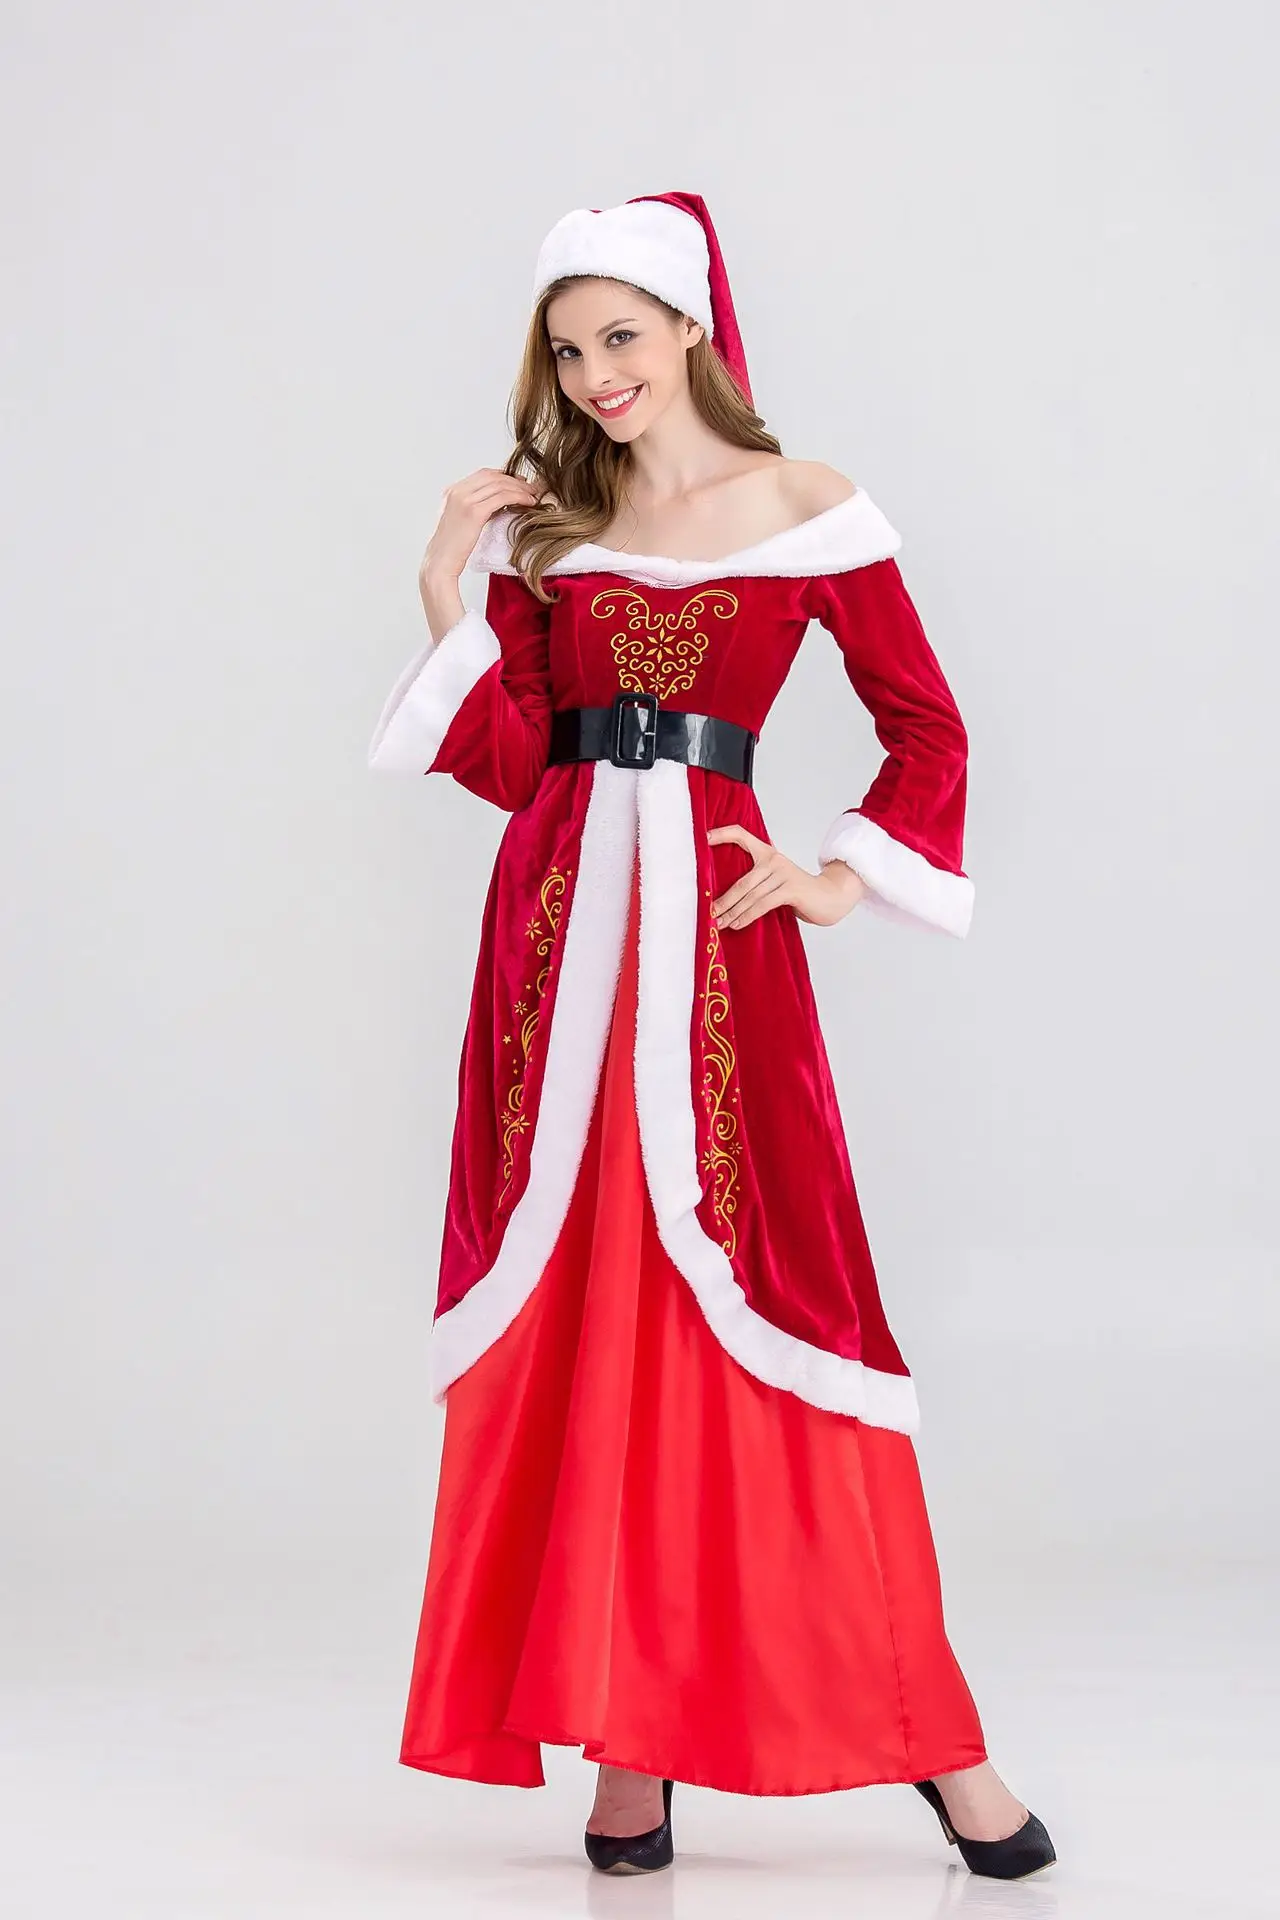 Рождественские костюмы, винтажные платья для корта, костюм Санта Клауса для взрослых, женские рождественские платья, красная сценическая шляпа для костюмов с поясом